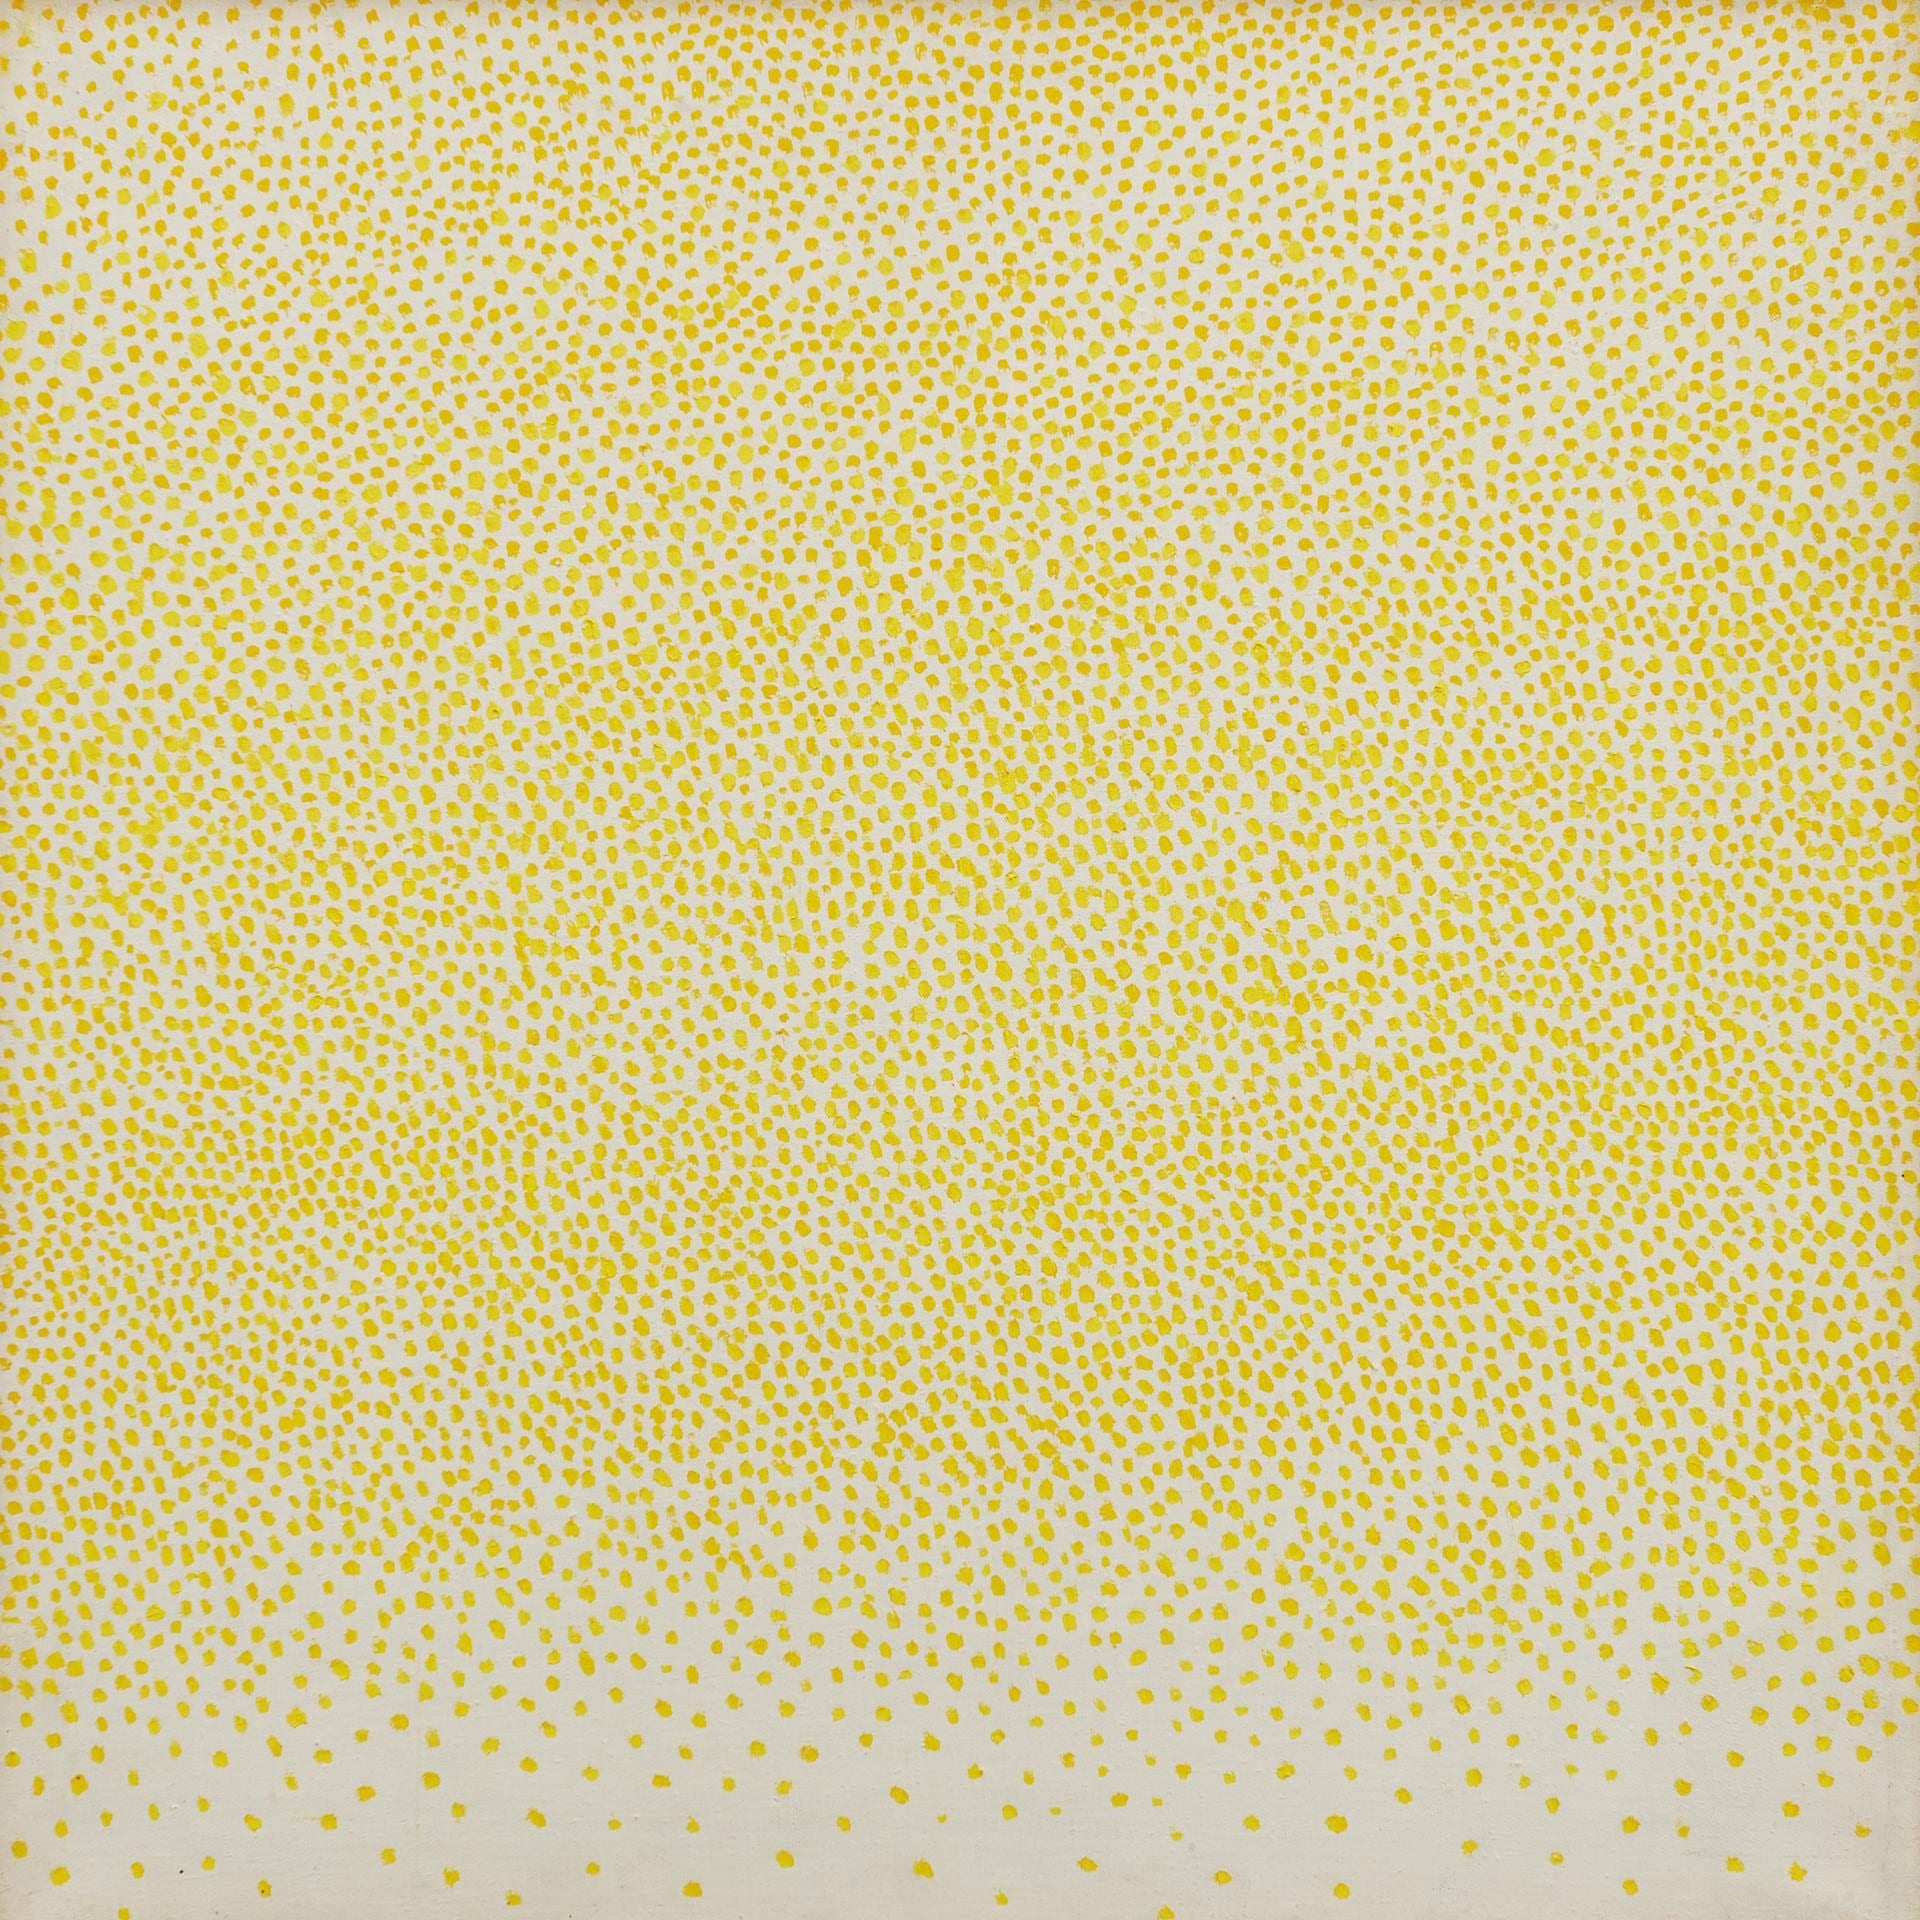 Stefan Gierowski, CCLXXIII, 1971, olio su tela, 67x67 cm. Courtesy: Fondazione Stefan Gierowski. Ph: Adam Gut